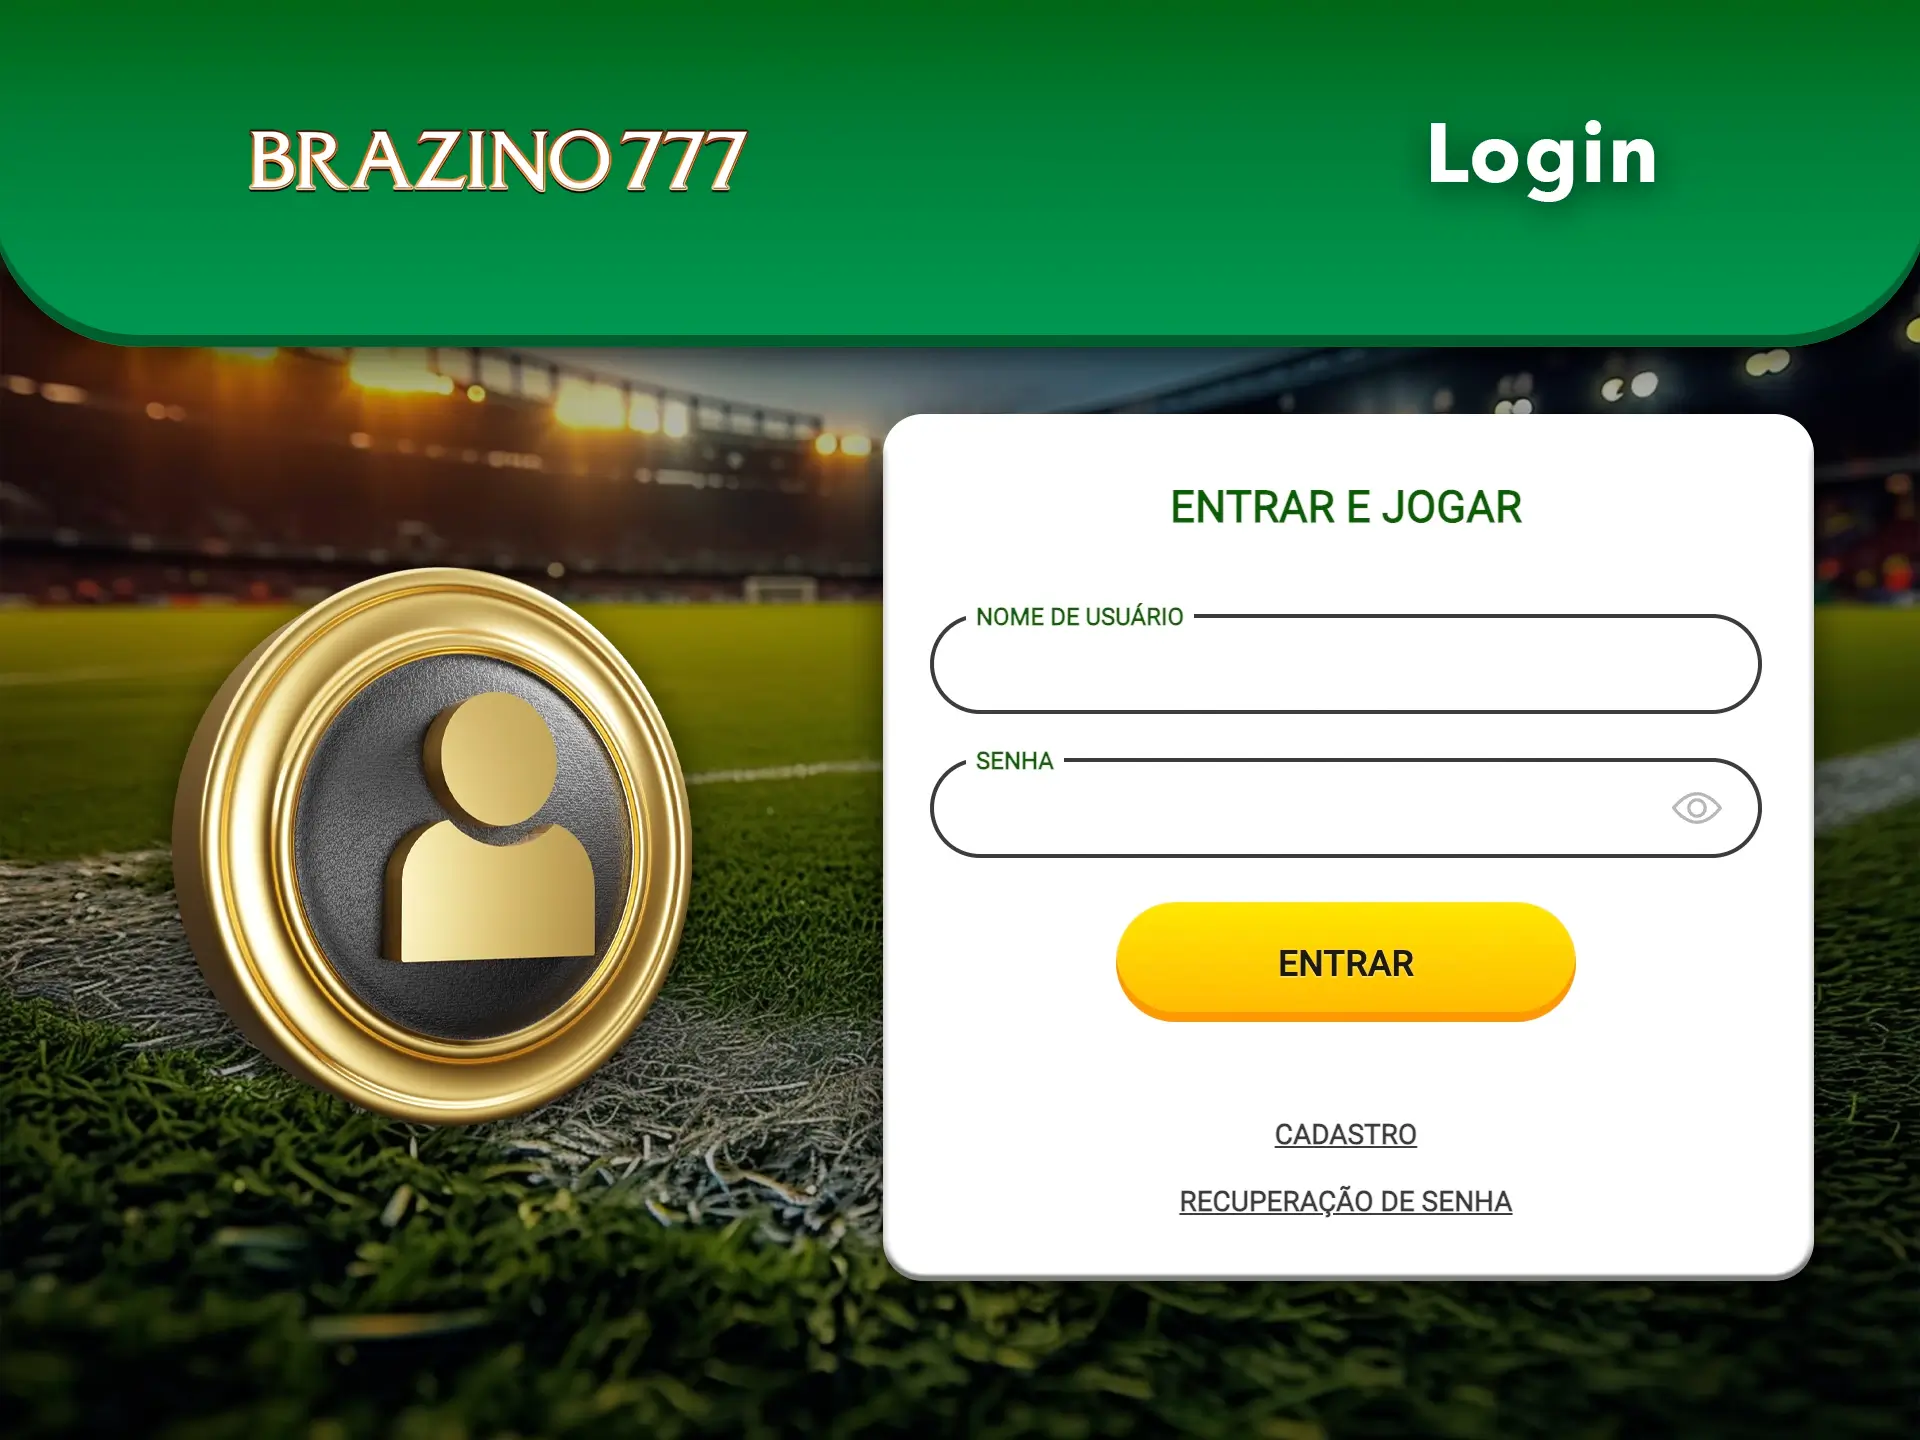 Inicie sessão na sua conta no Brazino777 para começar a apostar e a jogar jogos de casino.